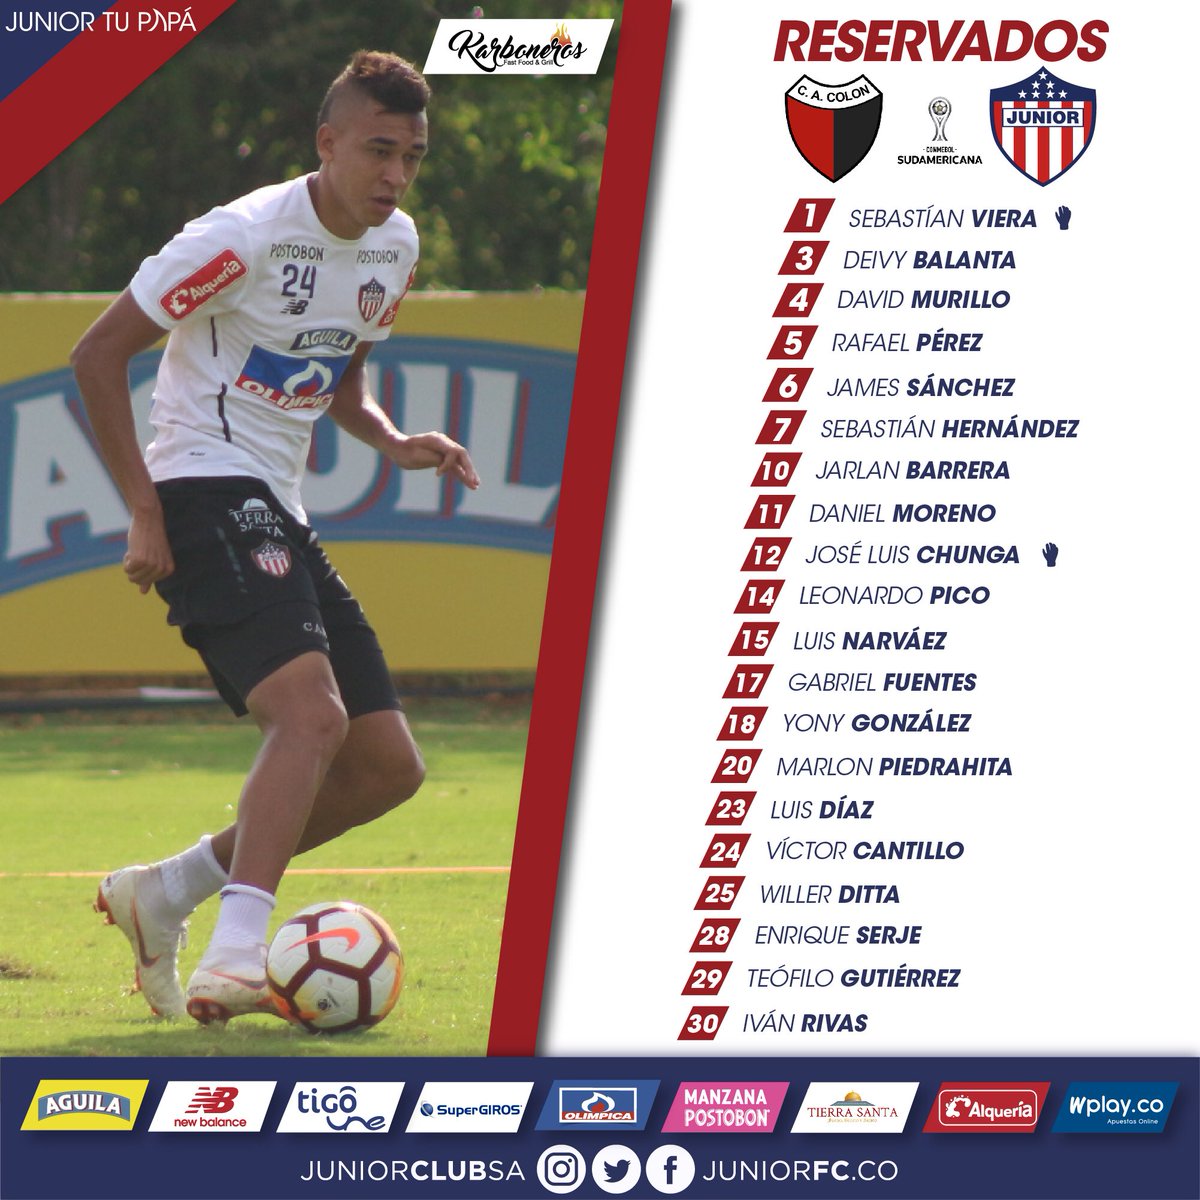 Lista de reservados para el partido Junior vs. Colón. 